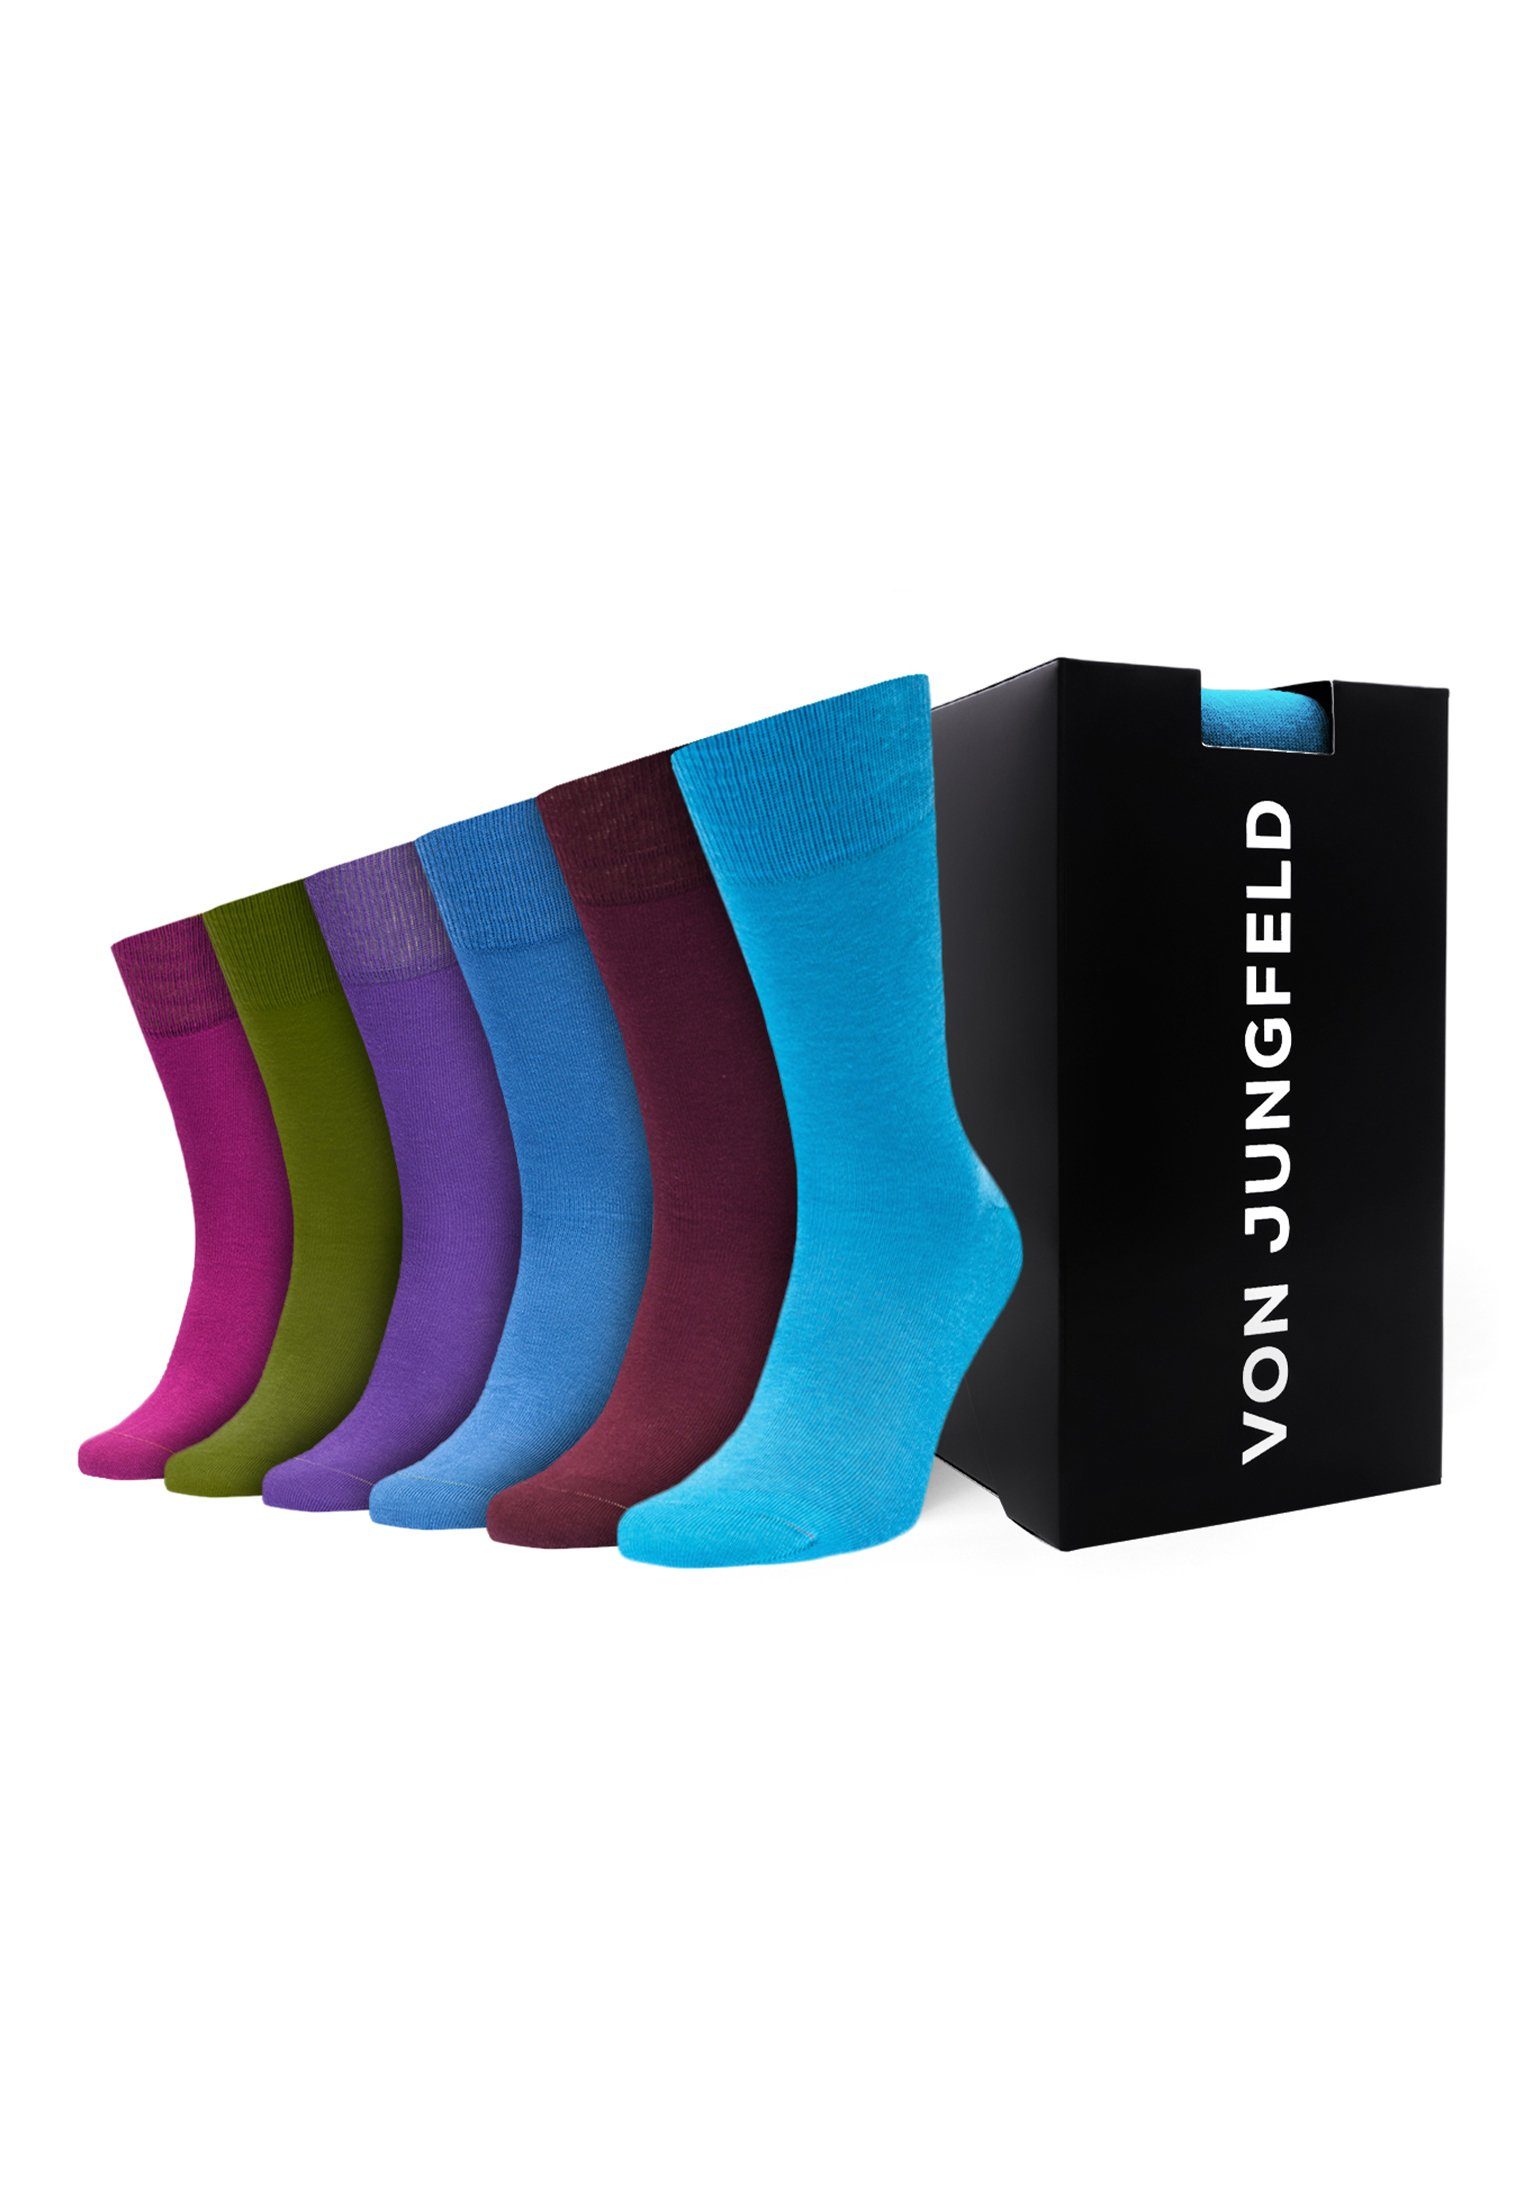 Box Socken von Geschenk Jungfeld